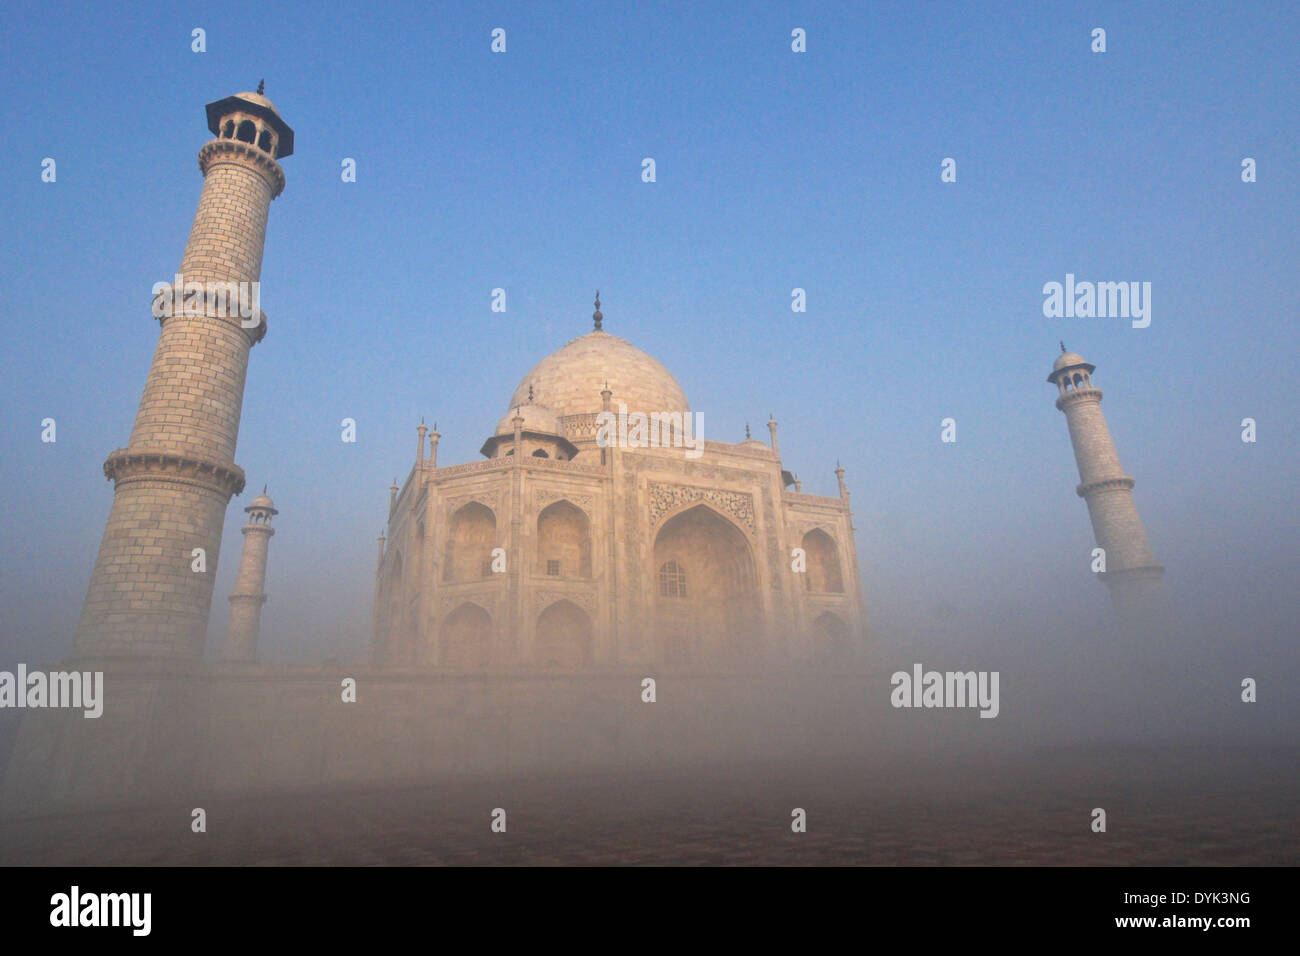 Taj Mahal on a foggy morning, Agra, India Stock Photo